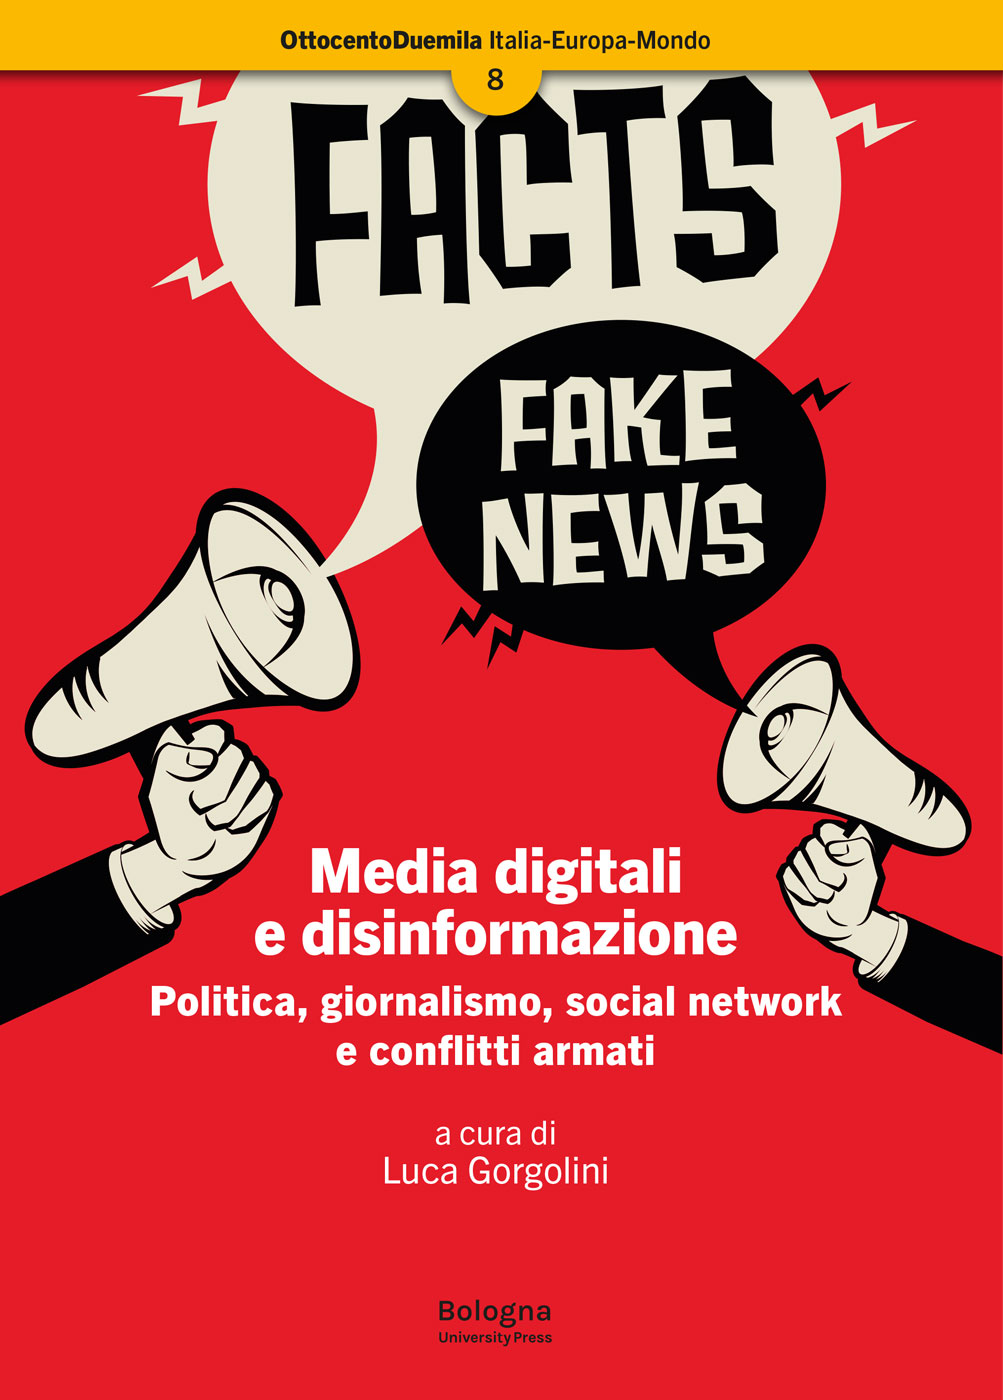 Media digitali e disinformazione - Bologna University Press